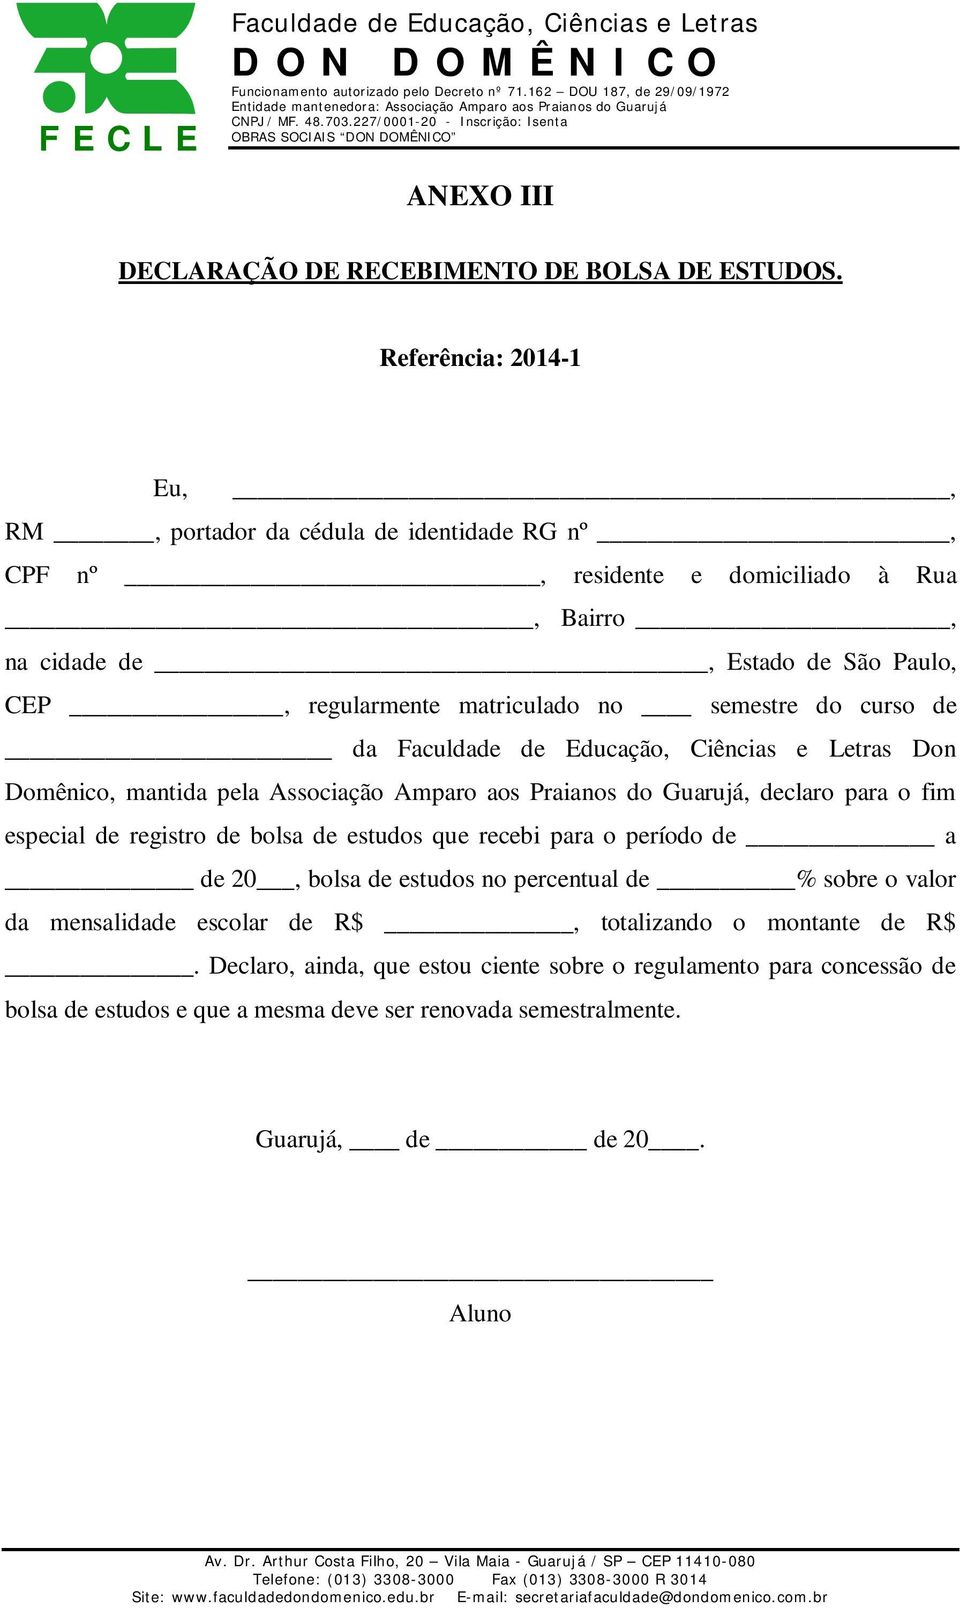 matriculado no semestre do curso de da Don Domênico, mantida pela Associação Amparo aos Praianos do Guarujá, declaro para o fim especial de registro de bolsa de estudos que